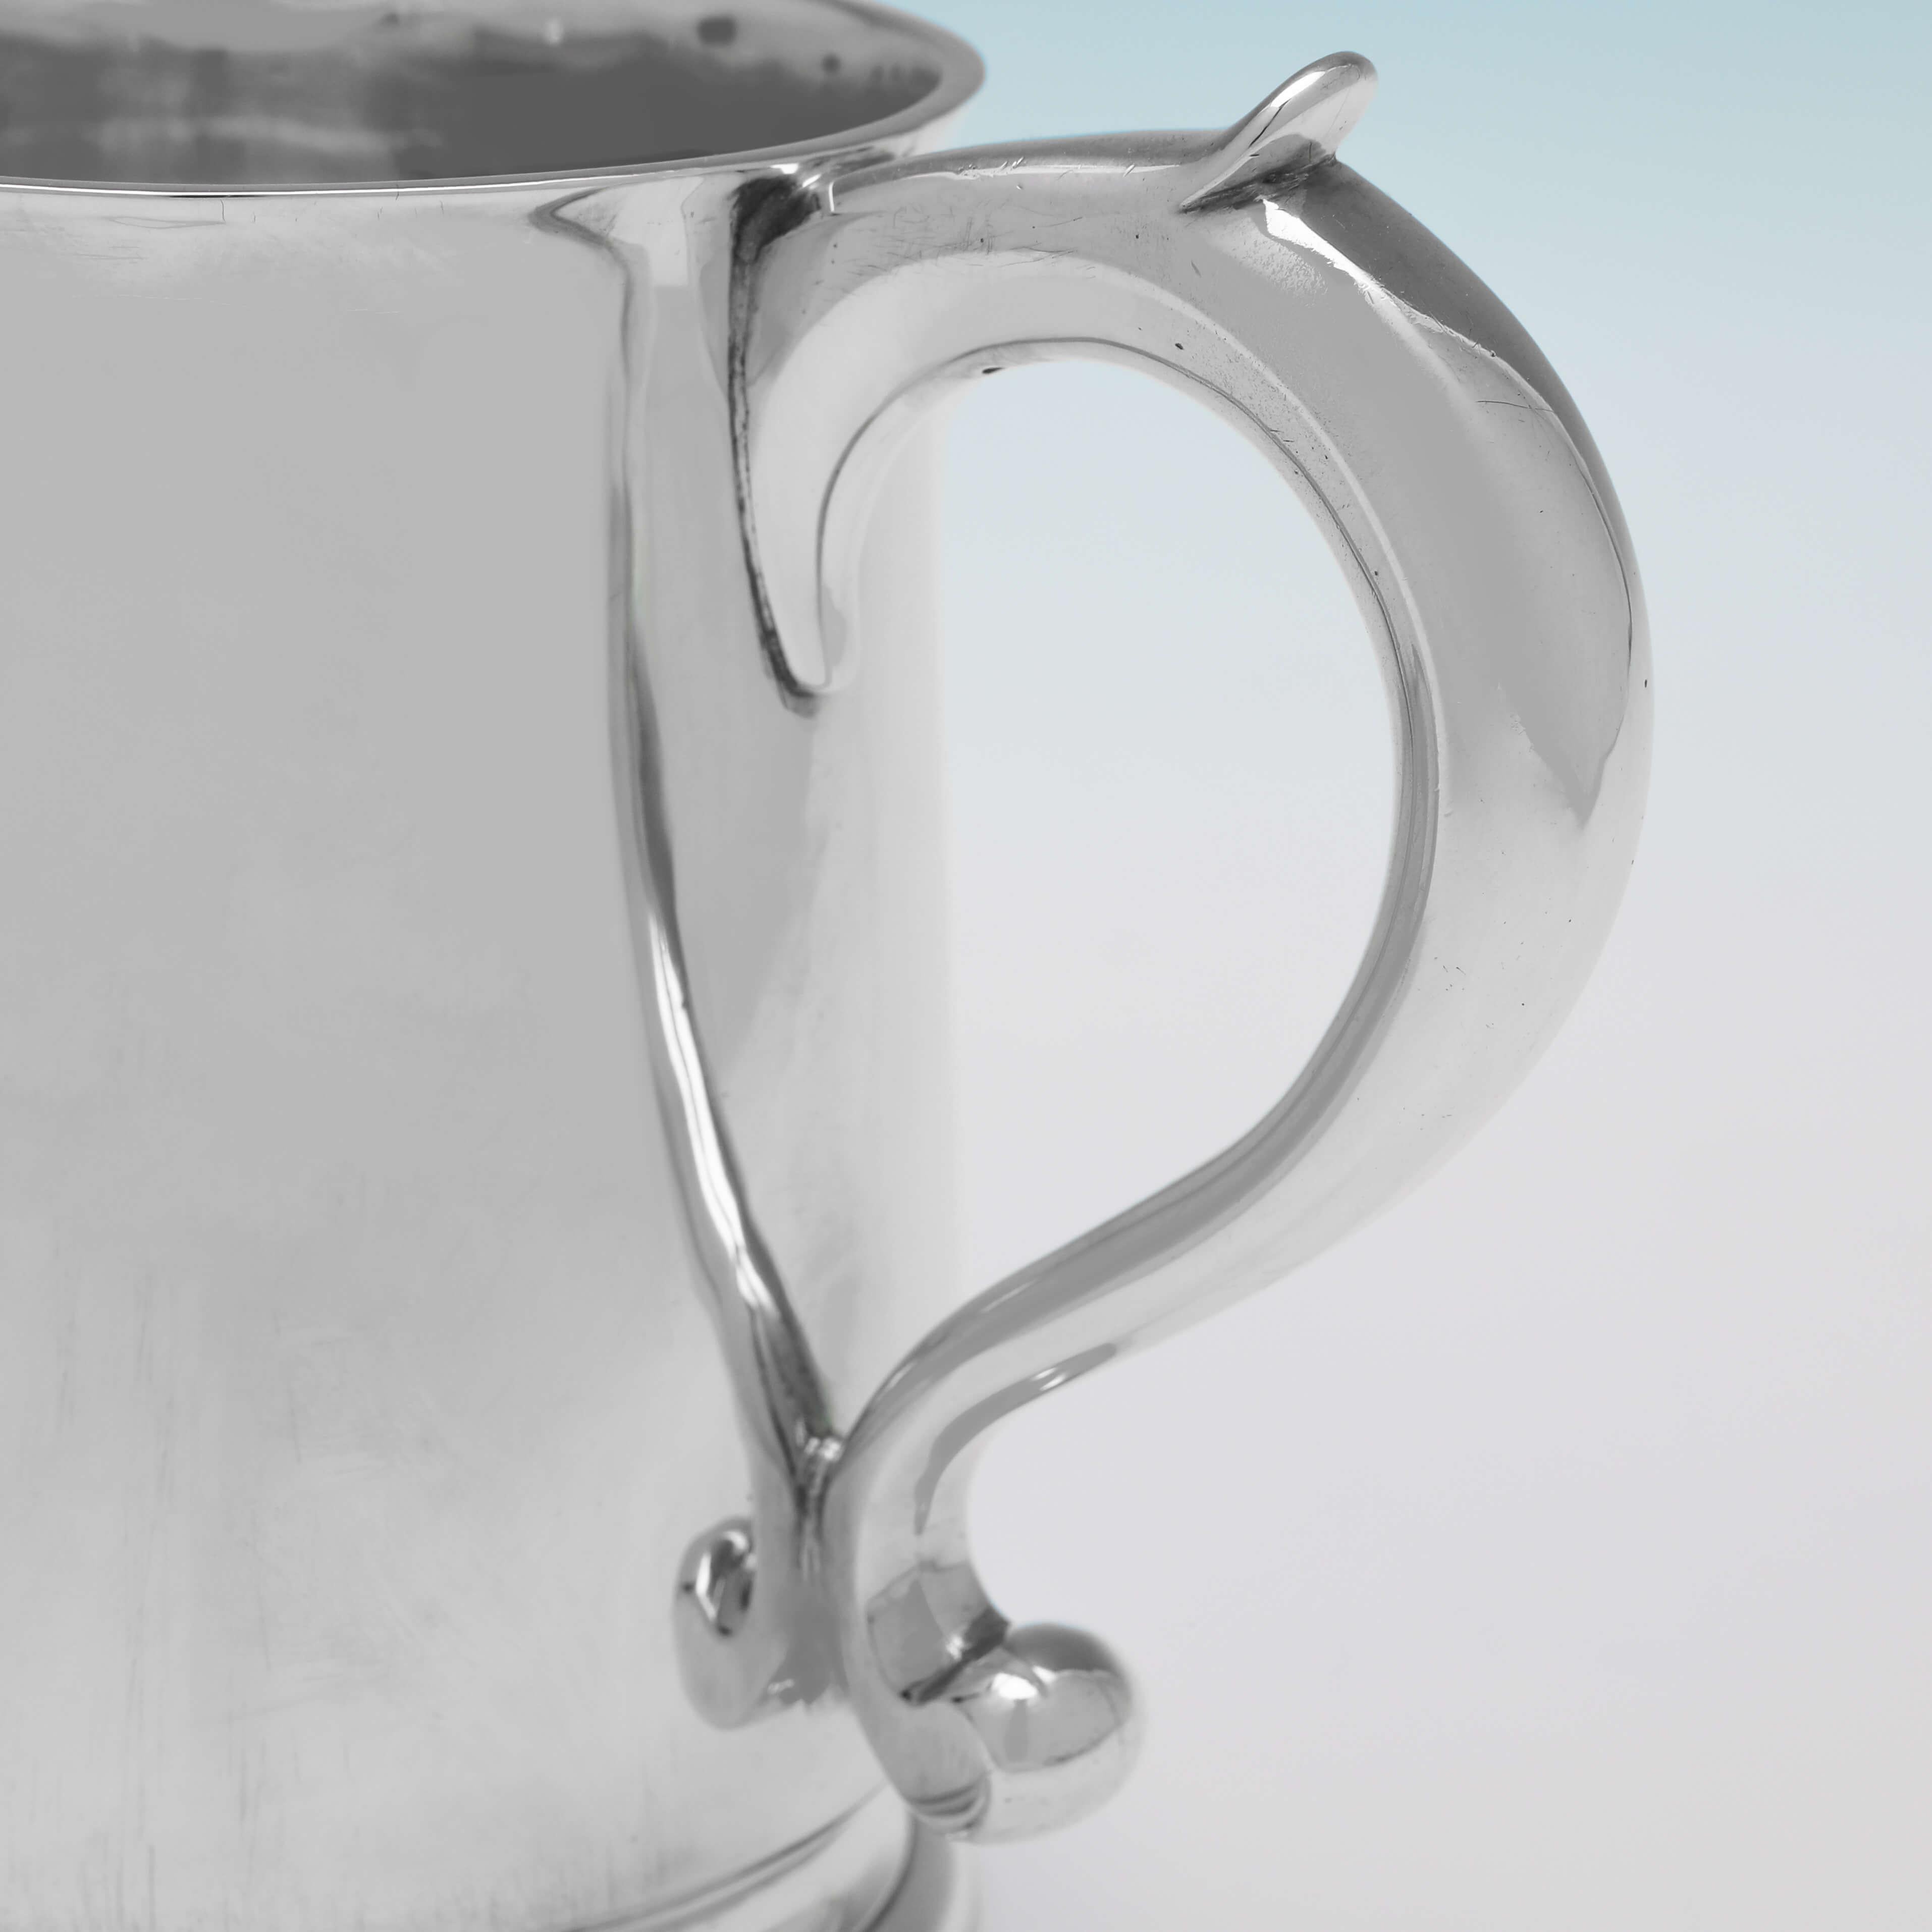 Mid-20th Century Art Deco Sterling Silver Beer Mug or Tankard - London 1935 C. J. Vander